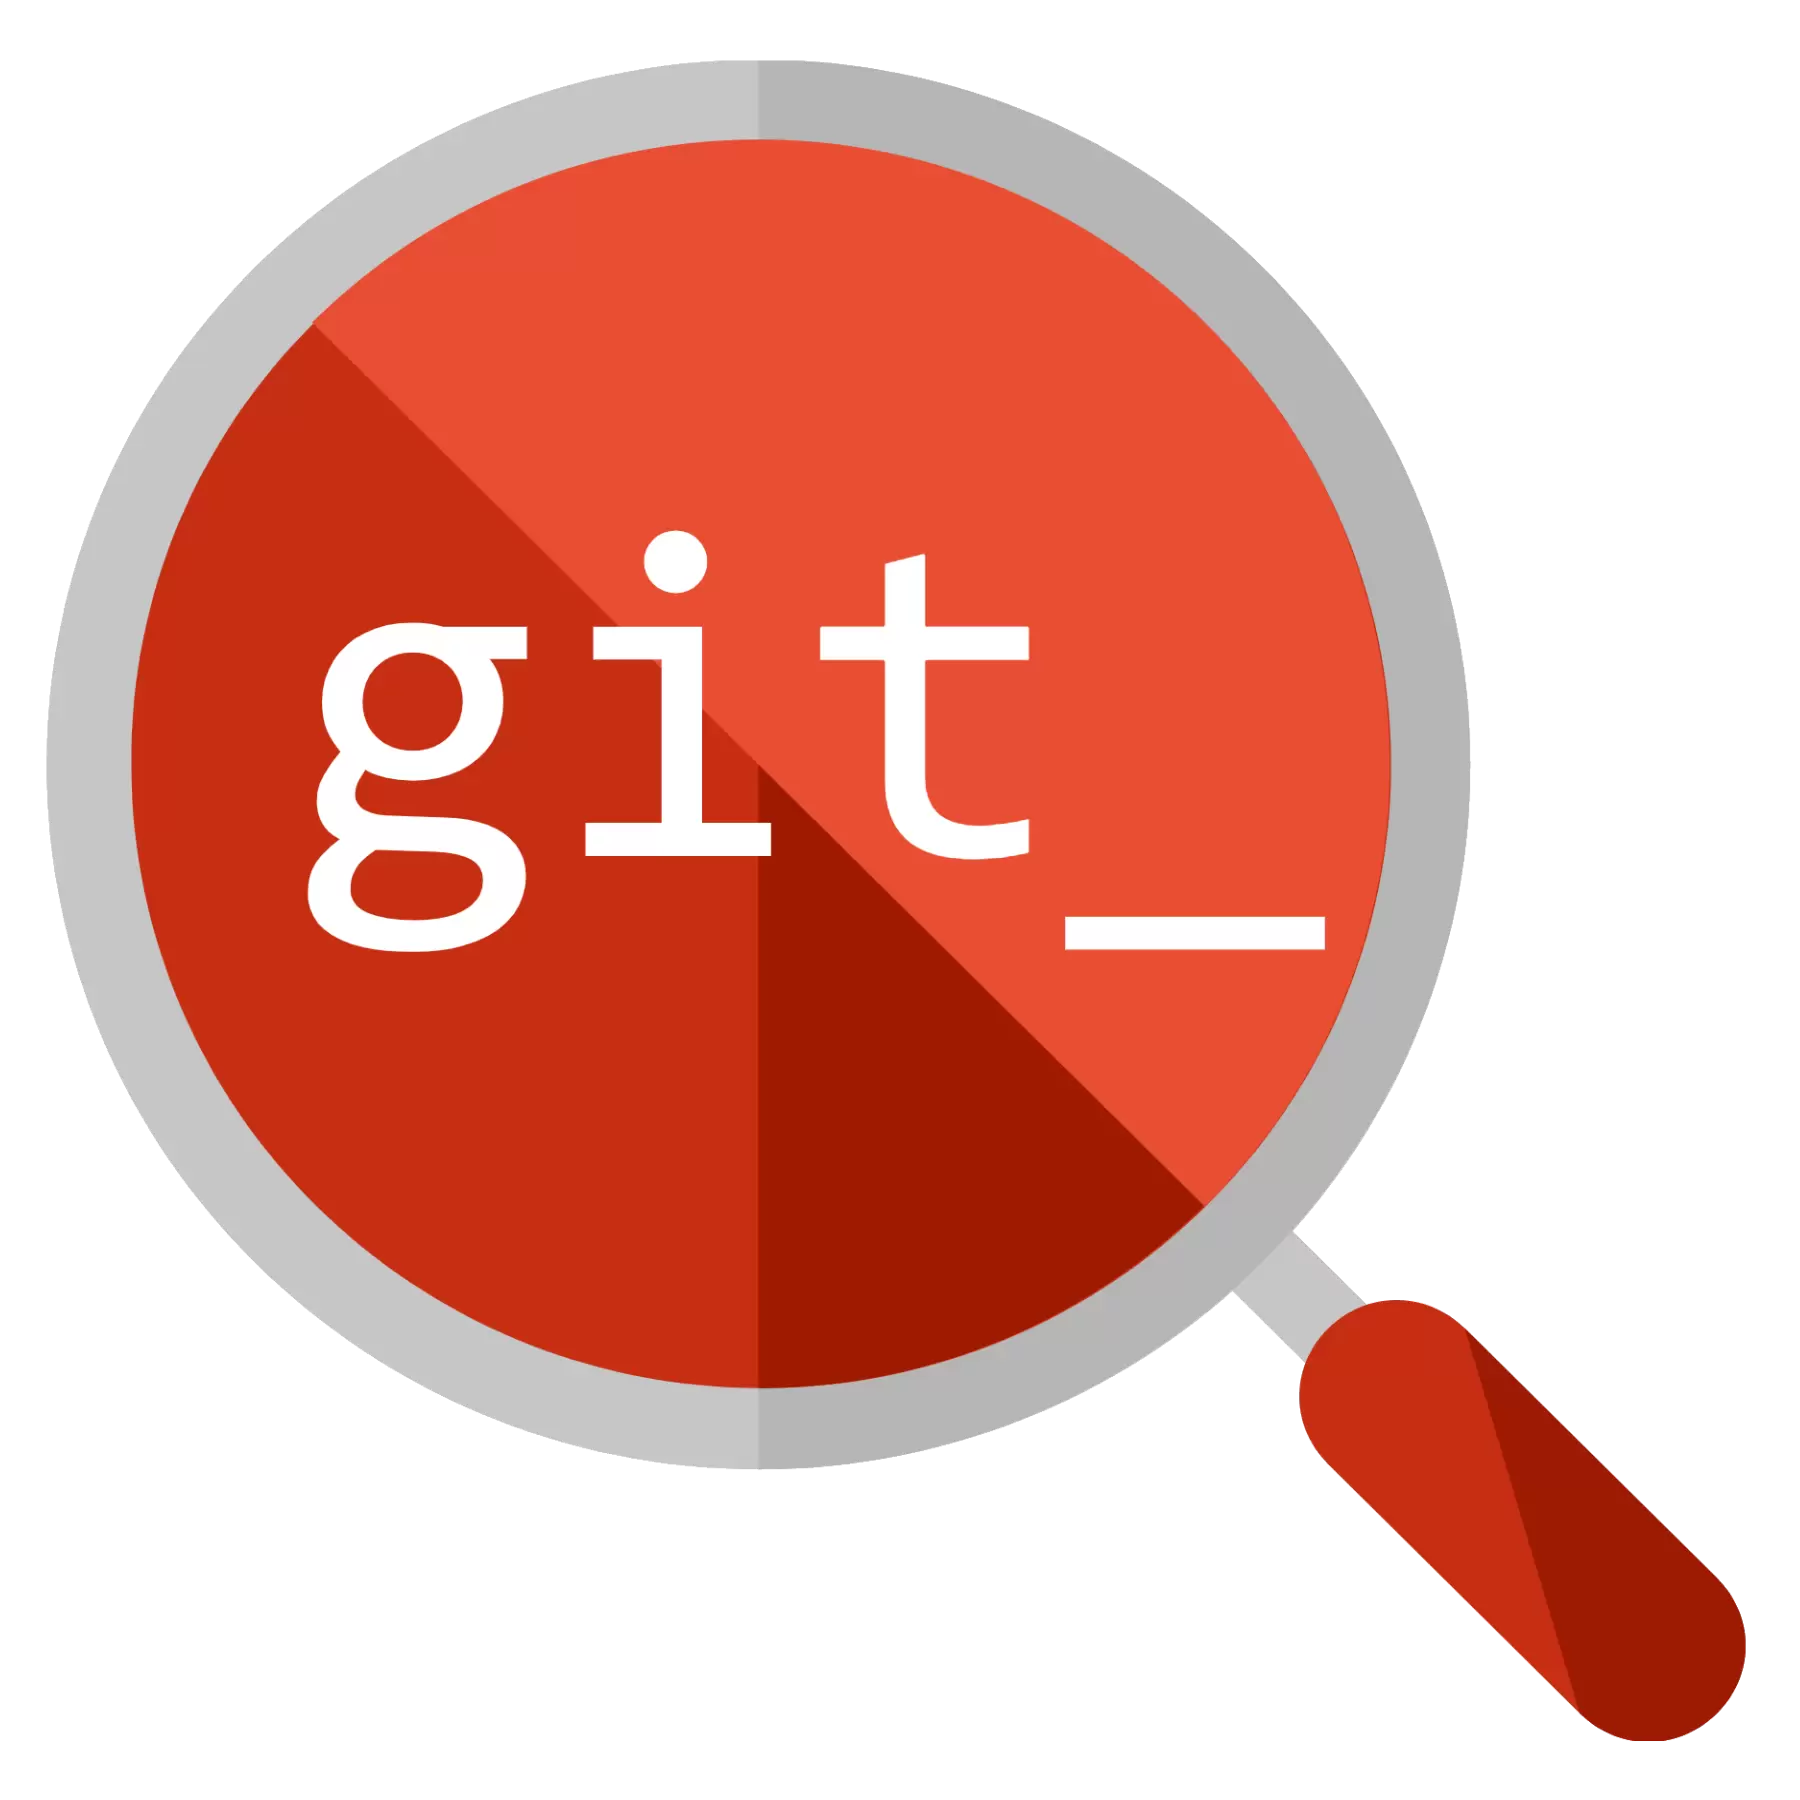 Git CLI Explorer for VSCode